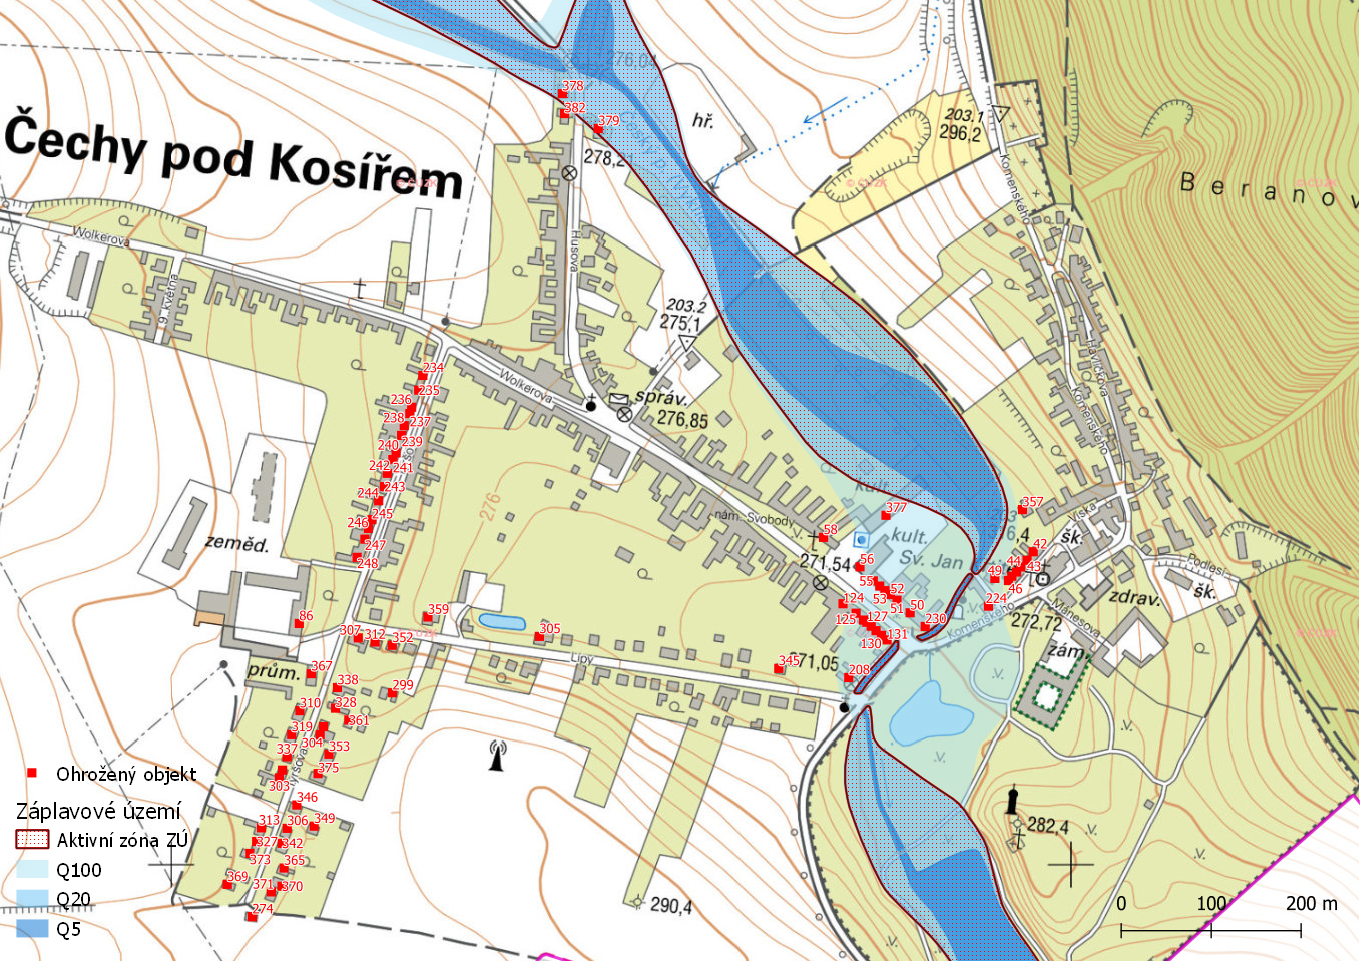 Ohrožené objekty na území obce Čechy pod Kosířem s vyznačeným záplavovým územím